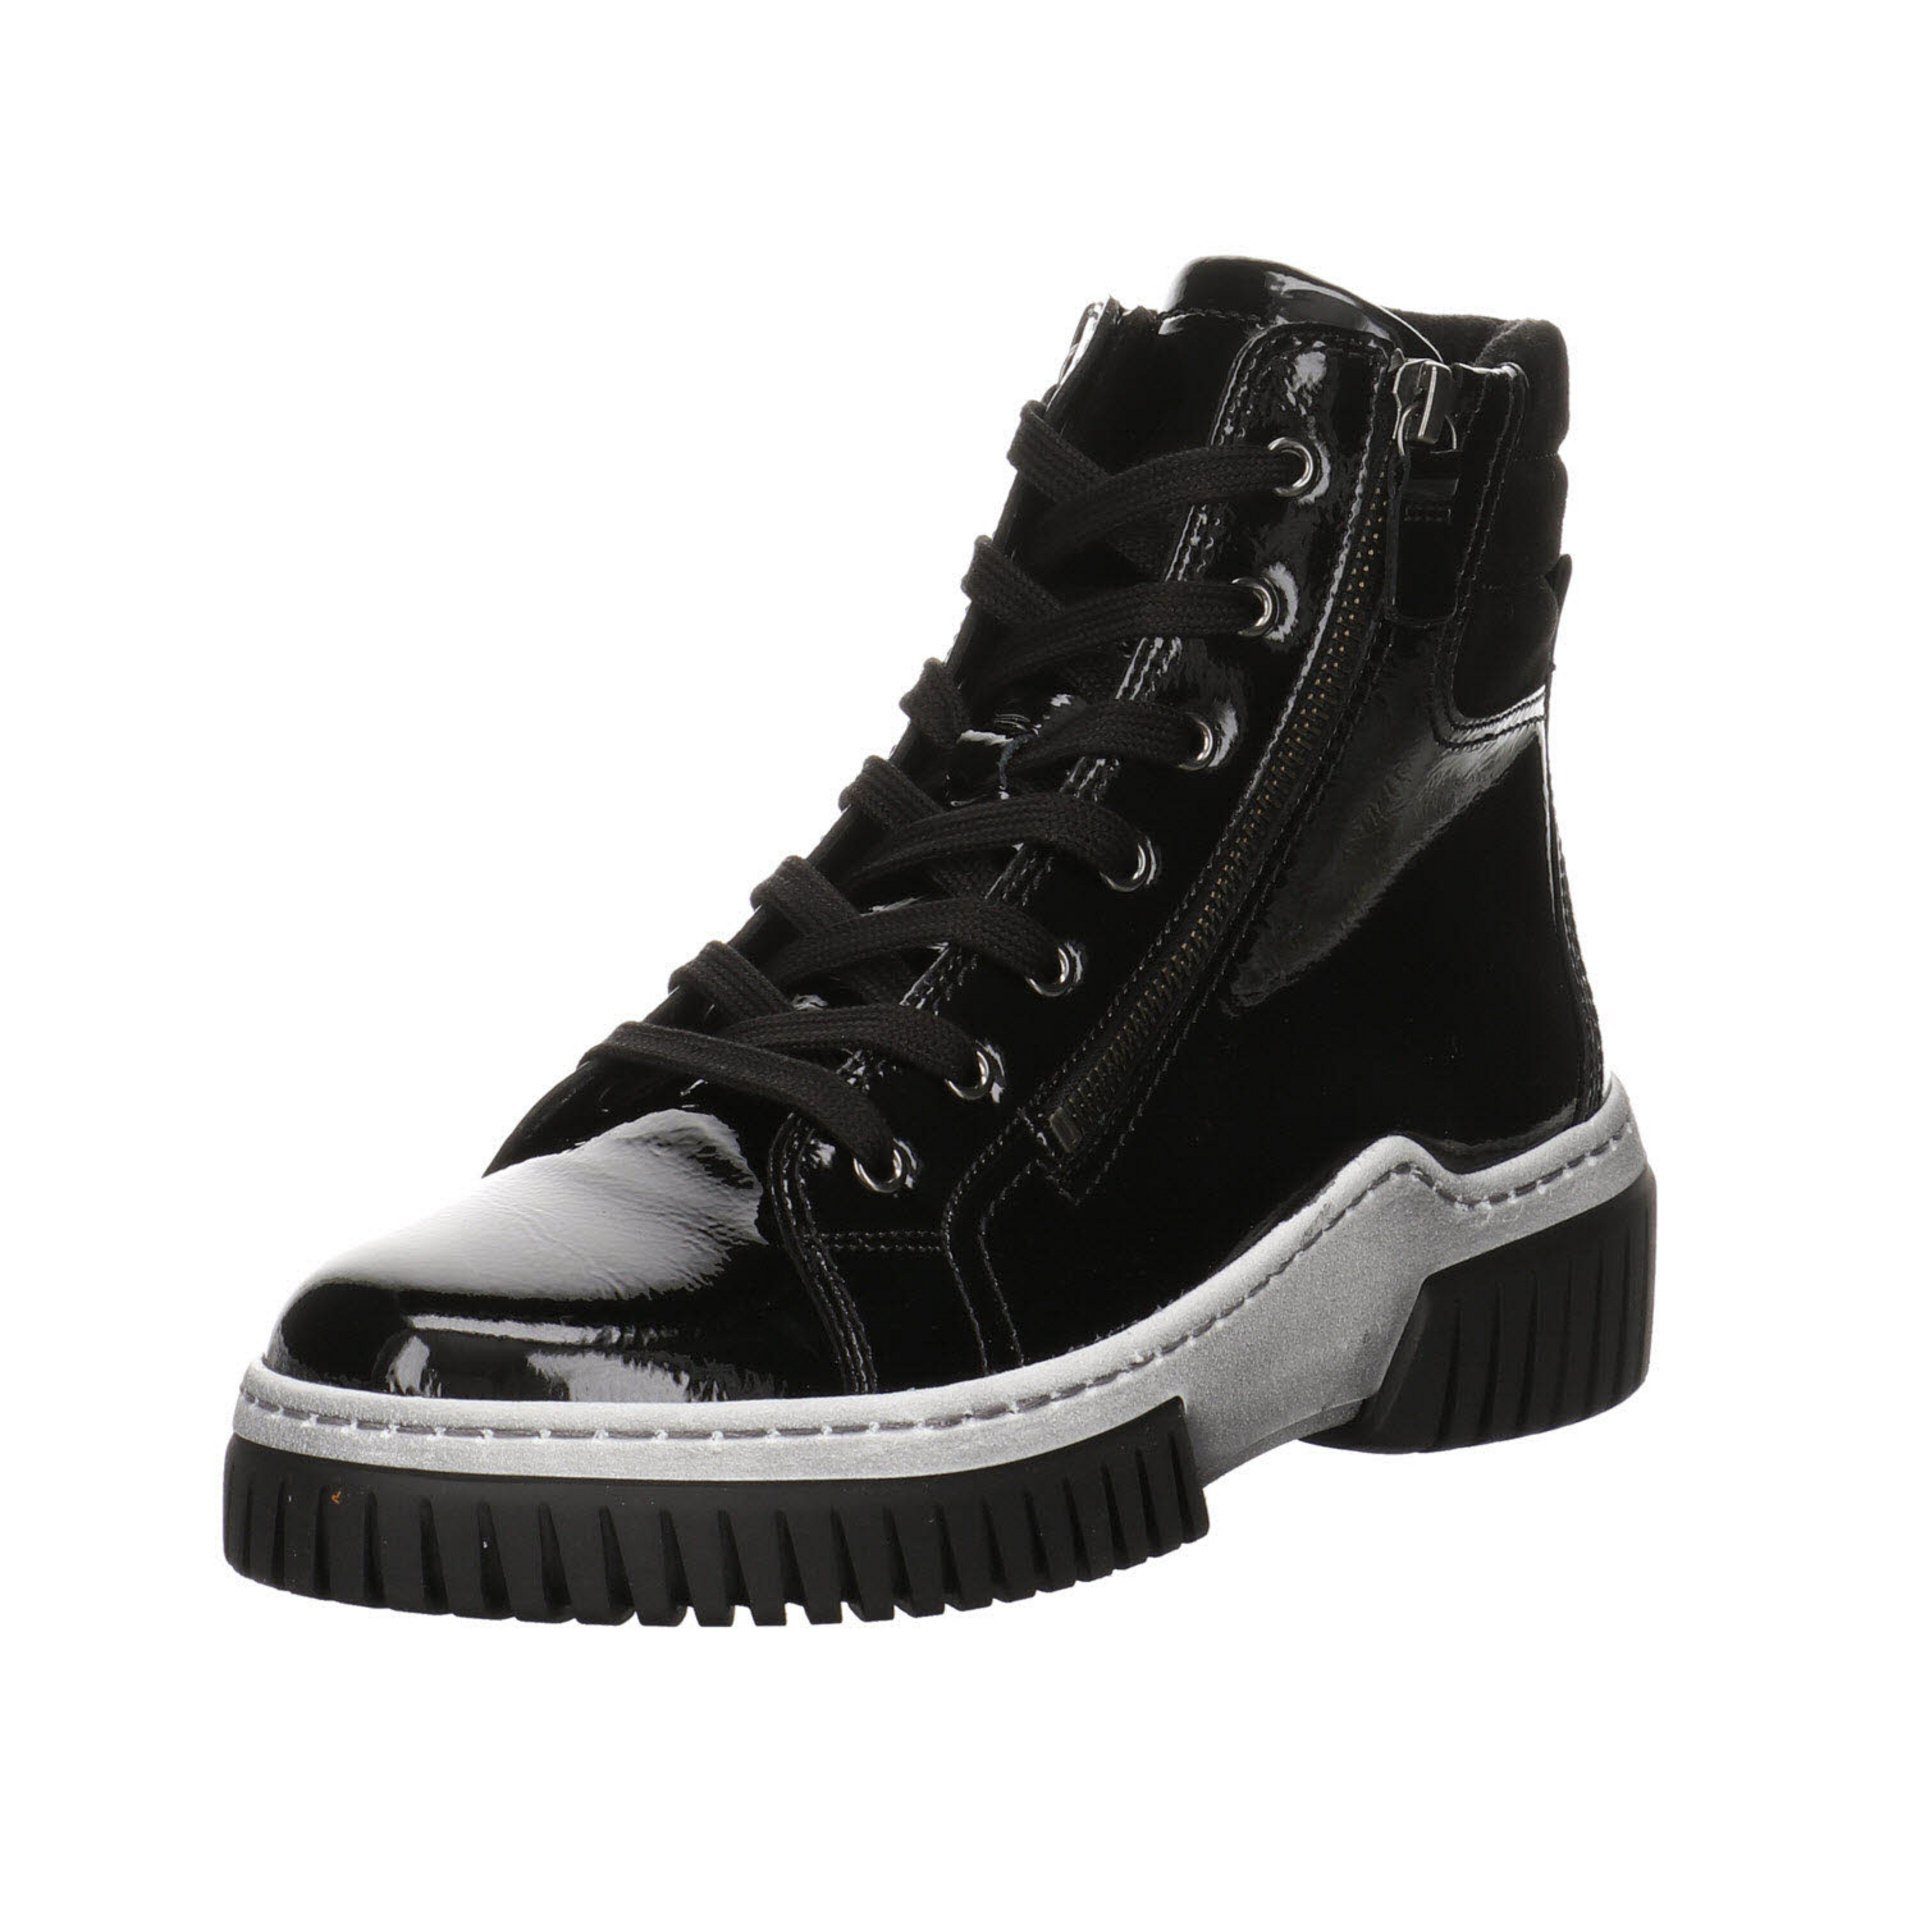 Damen Elegant Schuhe schwarz(altsilber) Lackleder Boots Gabor Schnürstiefel Stiefeletten Freizeit